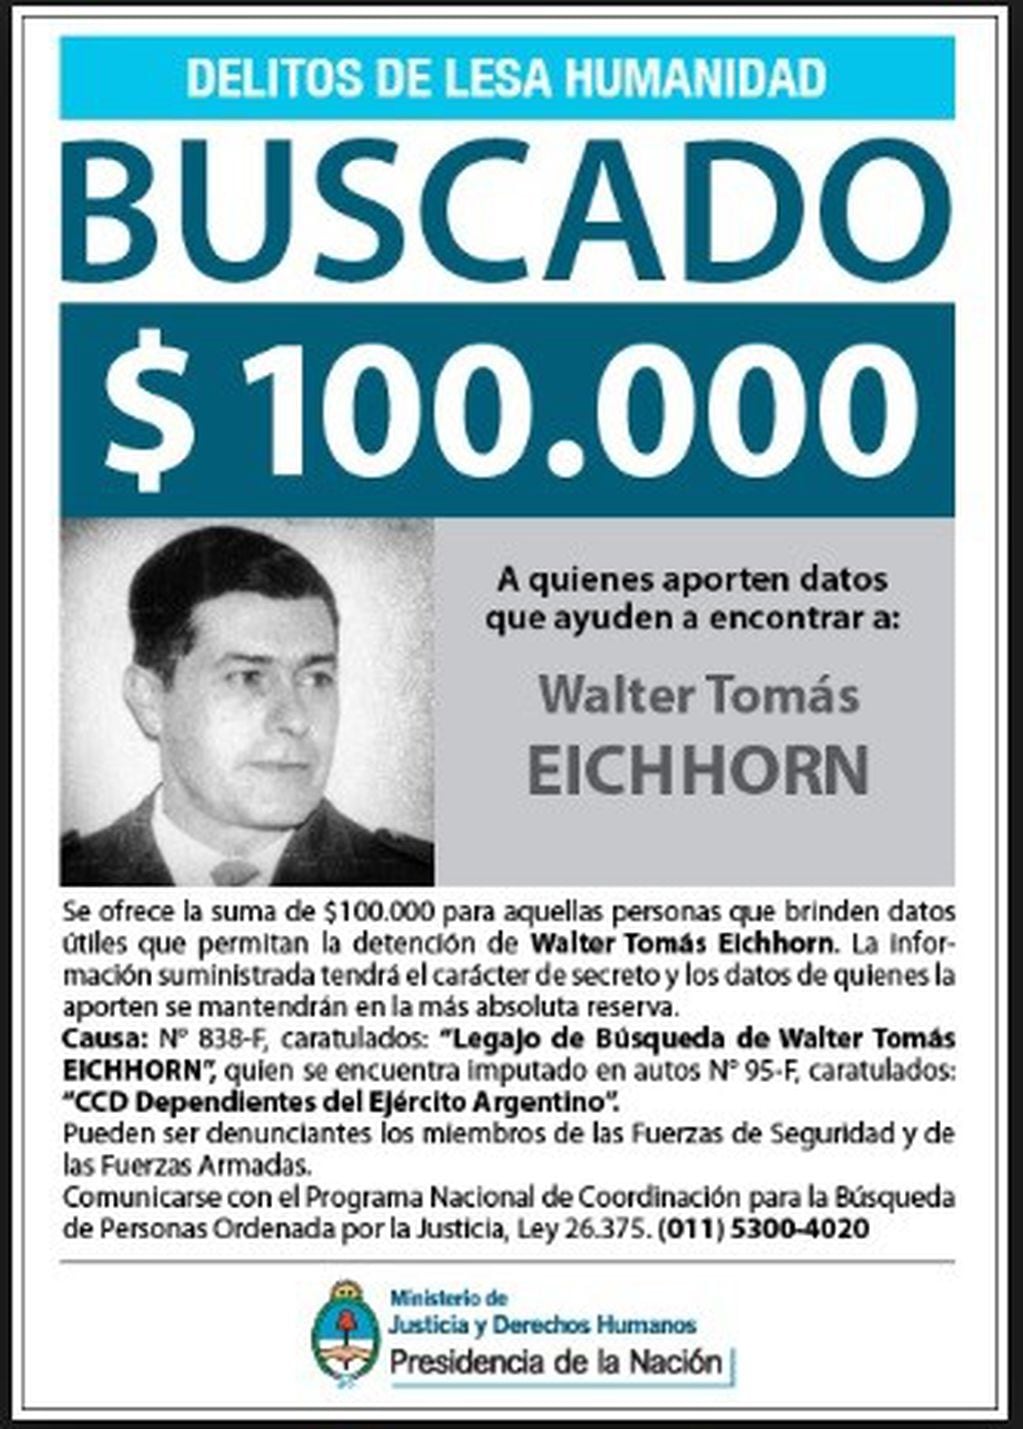 Publicación oficial sobre la recompensa y búsqueda de Walter Tomás Eichhorn.